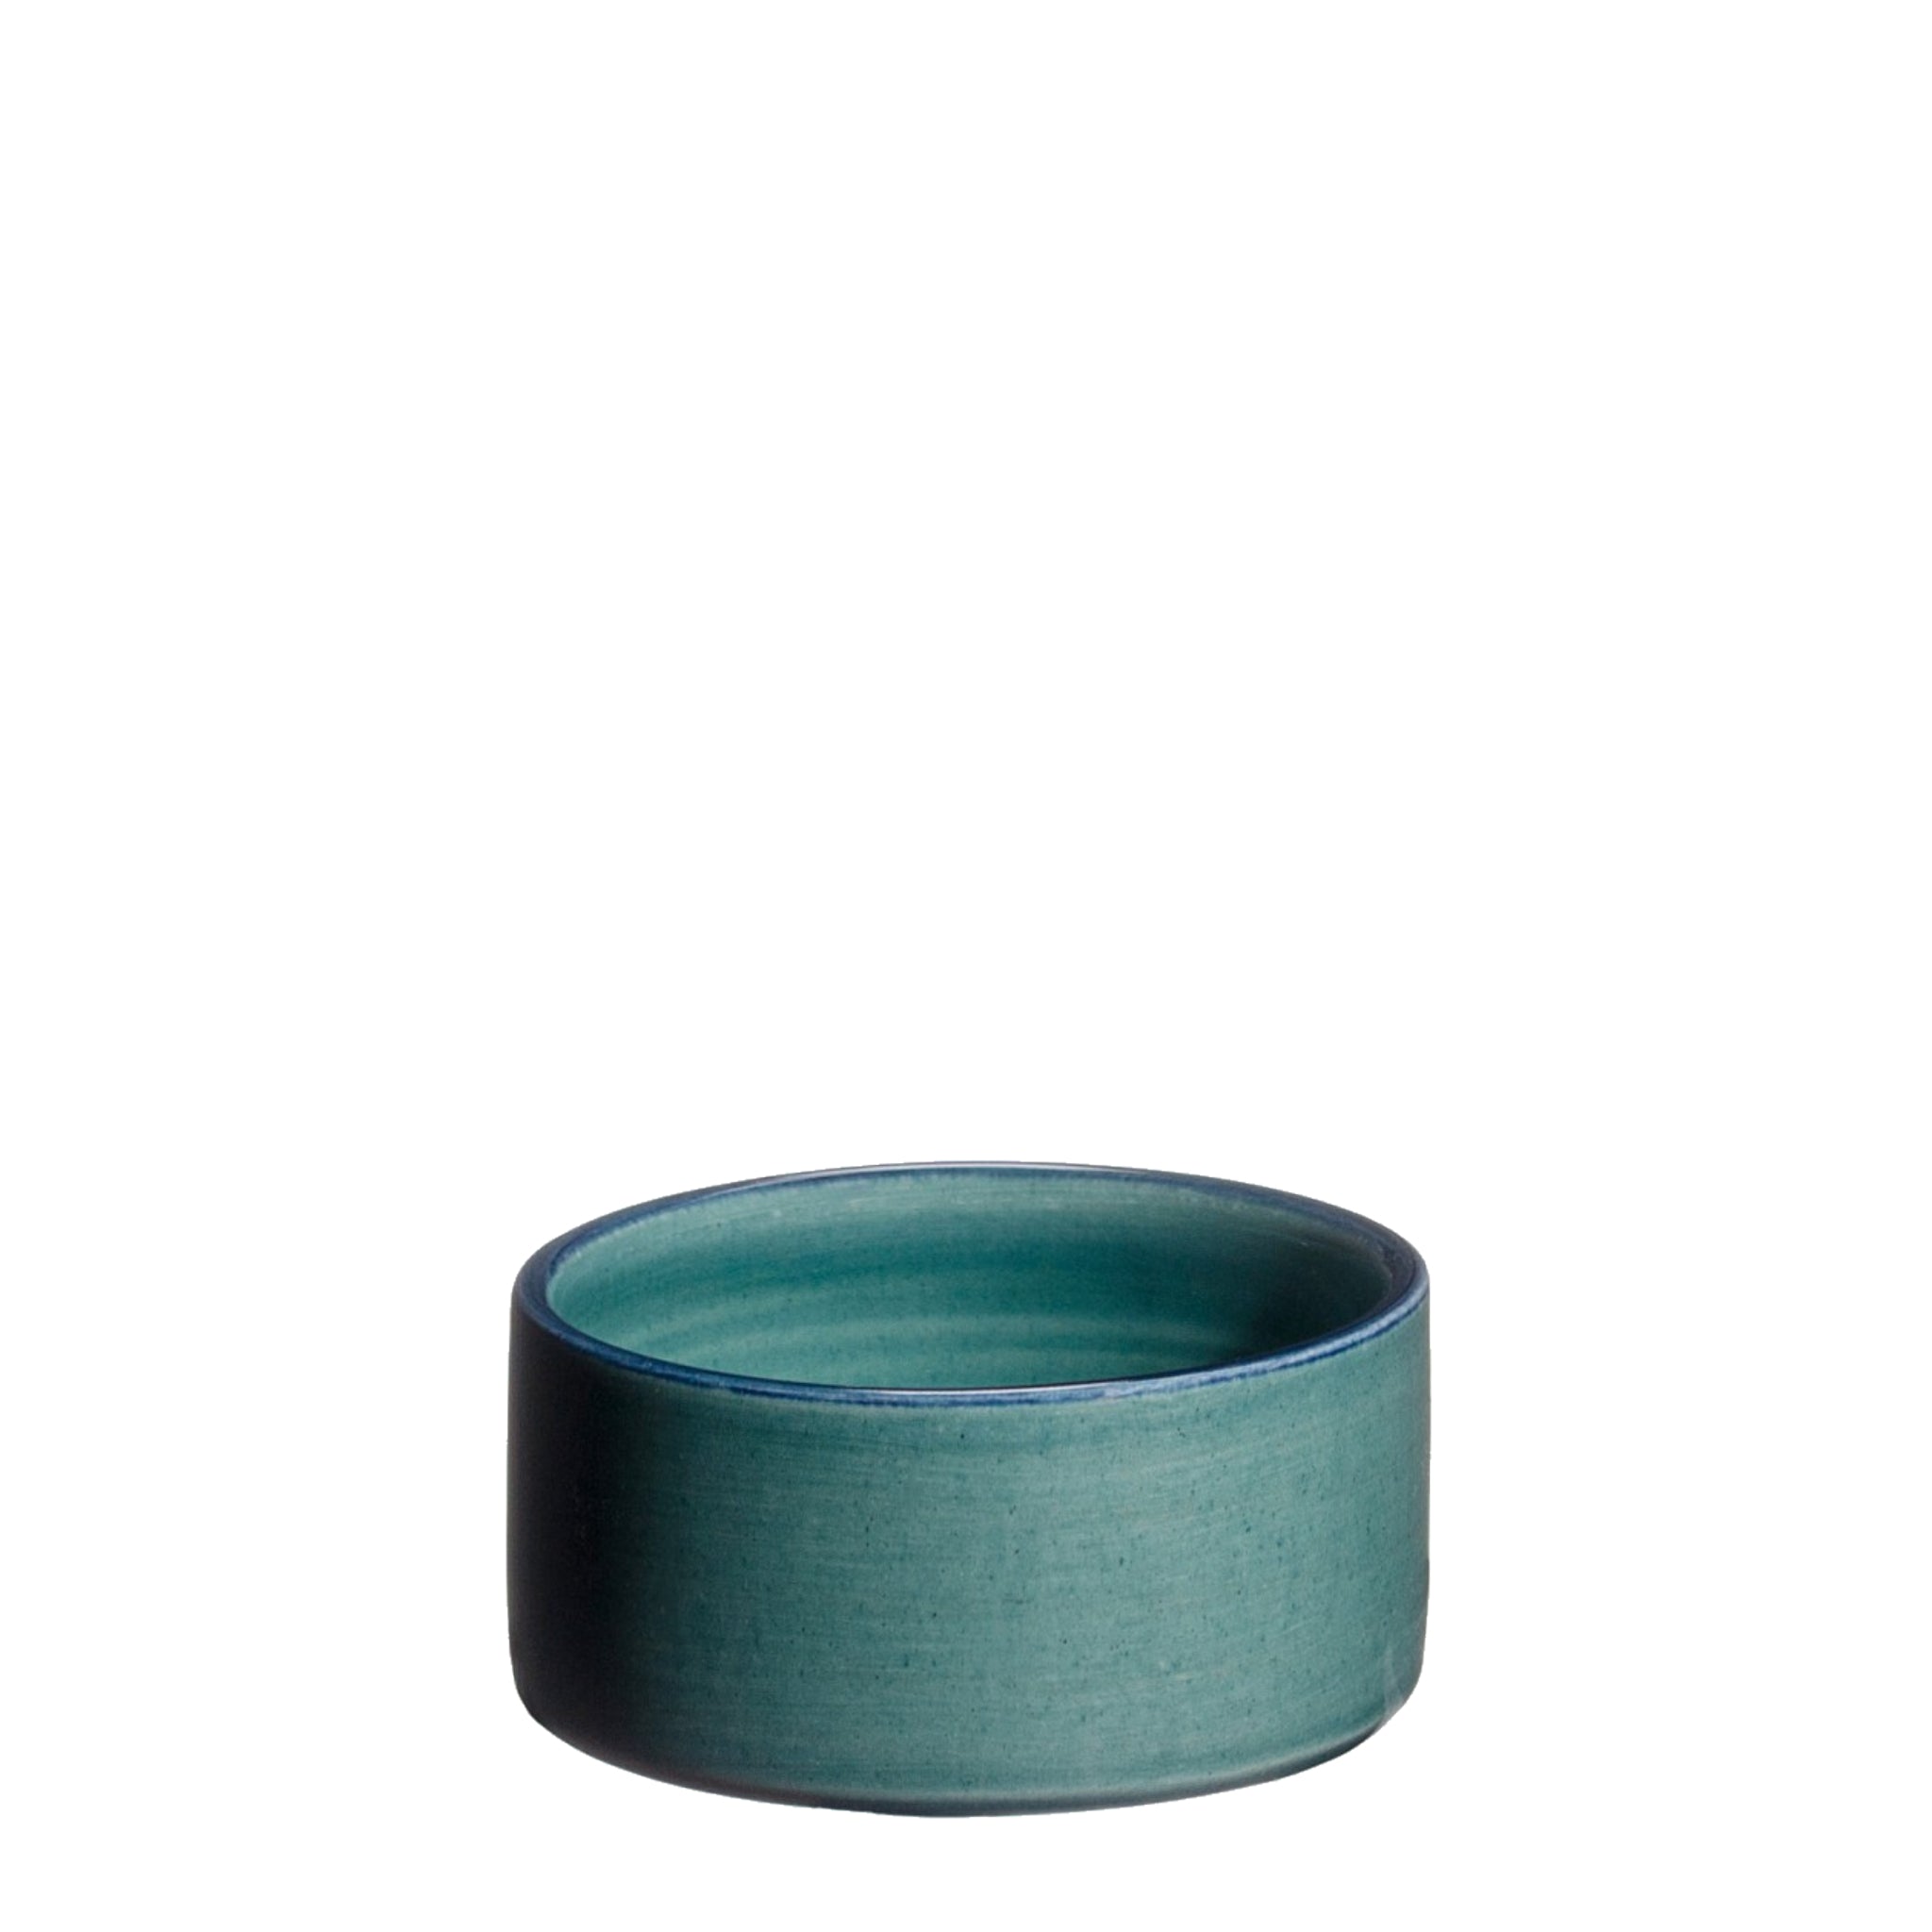 Petit Ravier lille skål blågrøn fra Atelier Bernex, Oliviers & Co